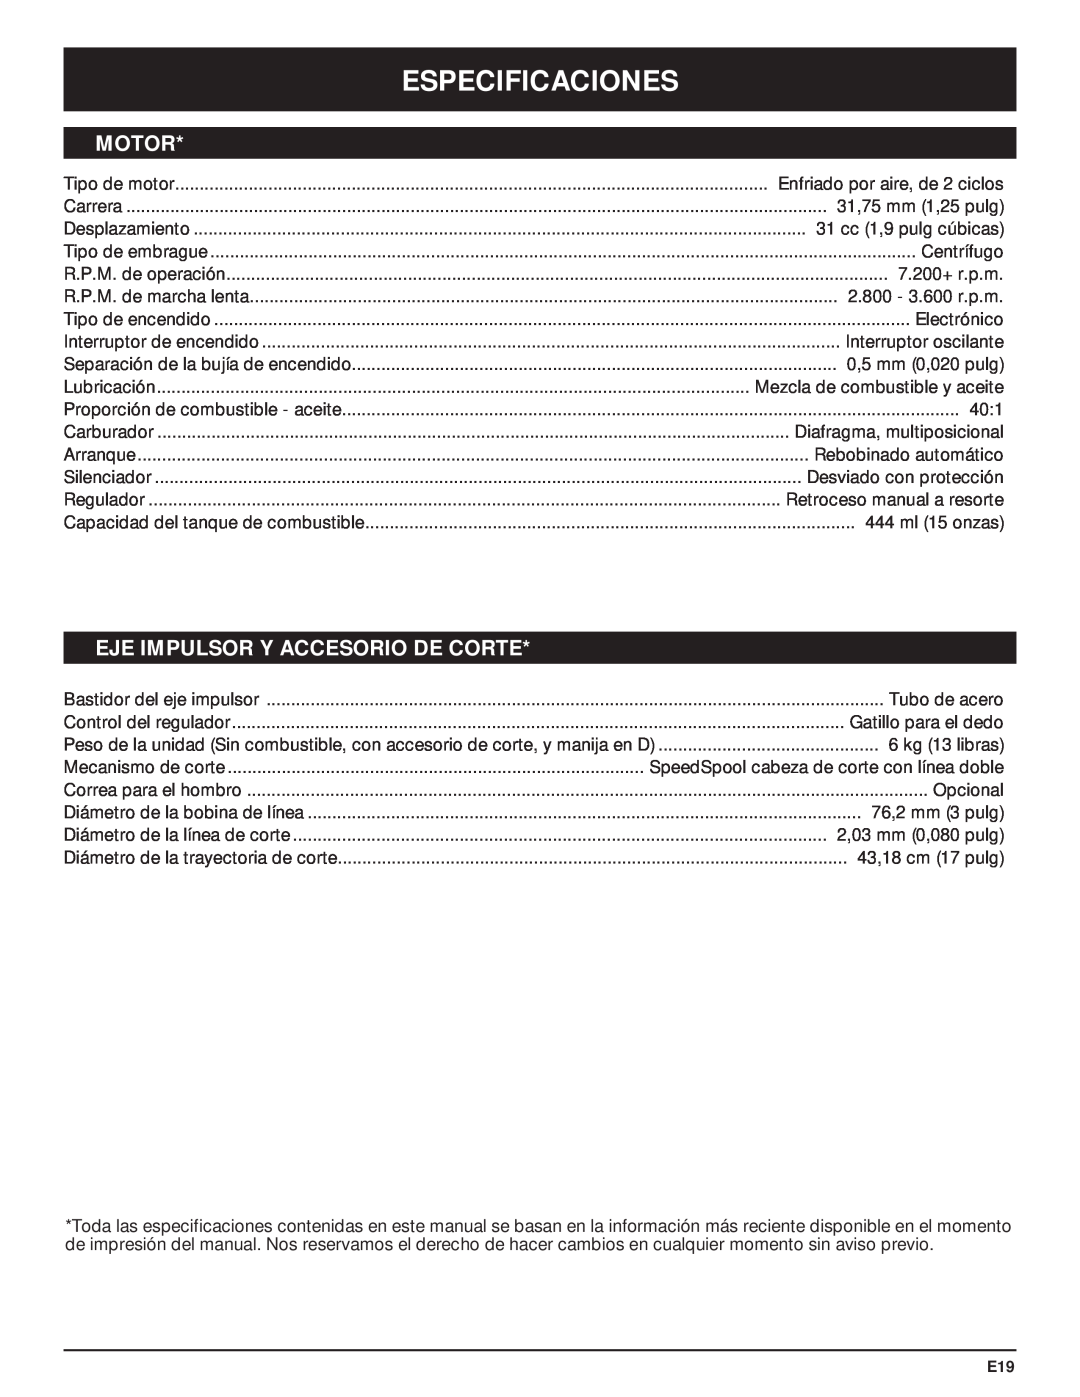 McCulloch MT705 manual Especificaciones, Motor, Eje Impulsor Y Accesorio De Corte 